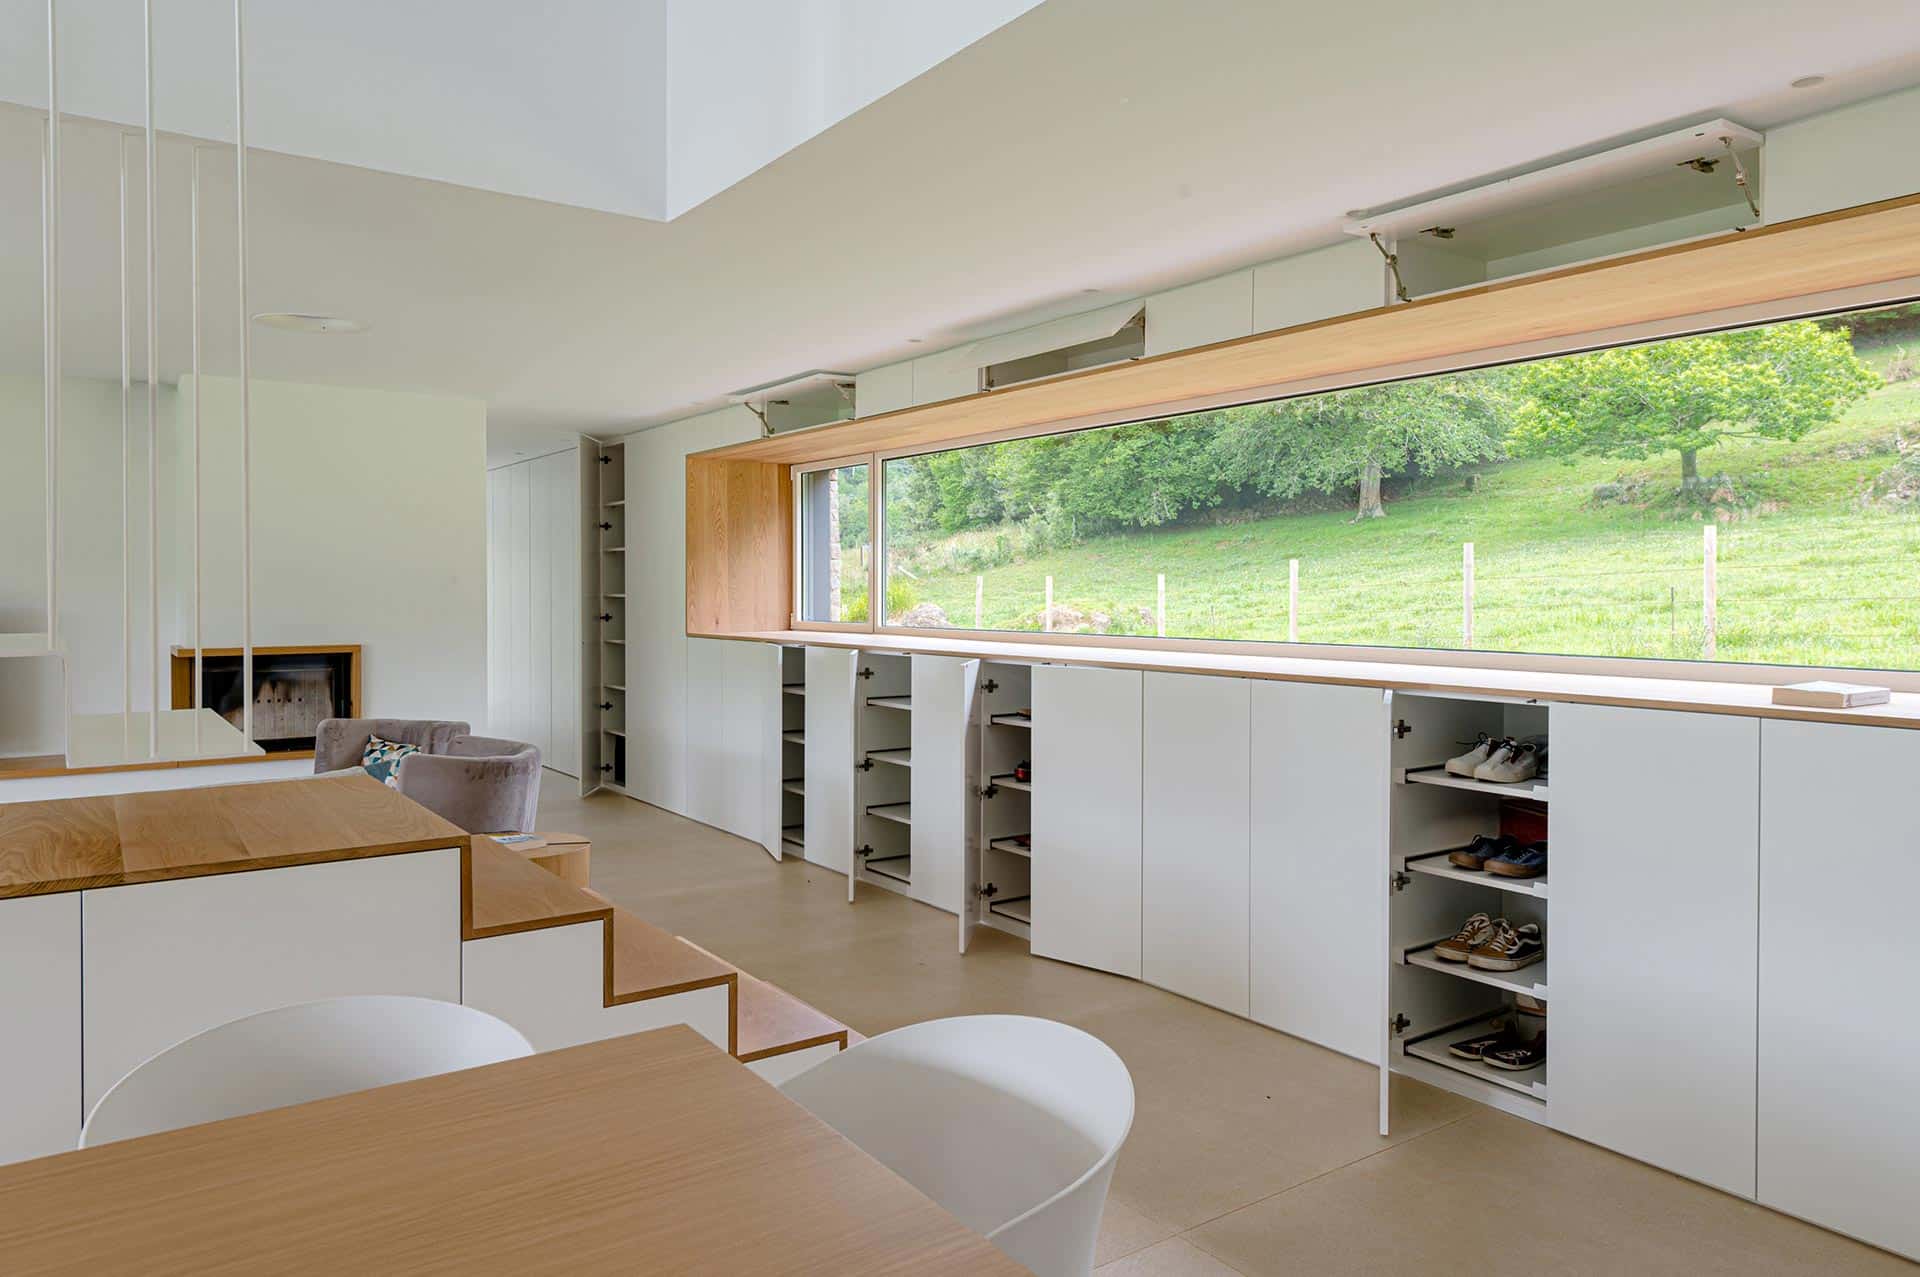 Ventana y armarios de casa moderna con jardín diseñada por Moah Arquitectos en Pámanes